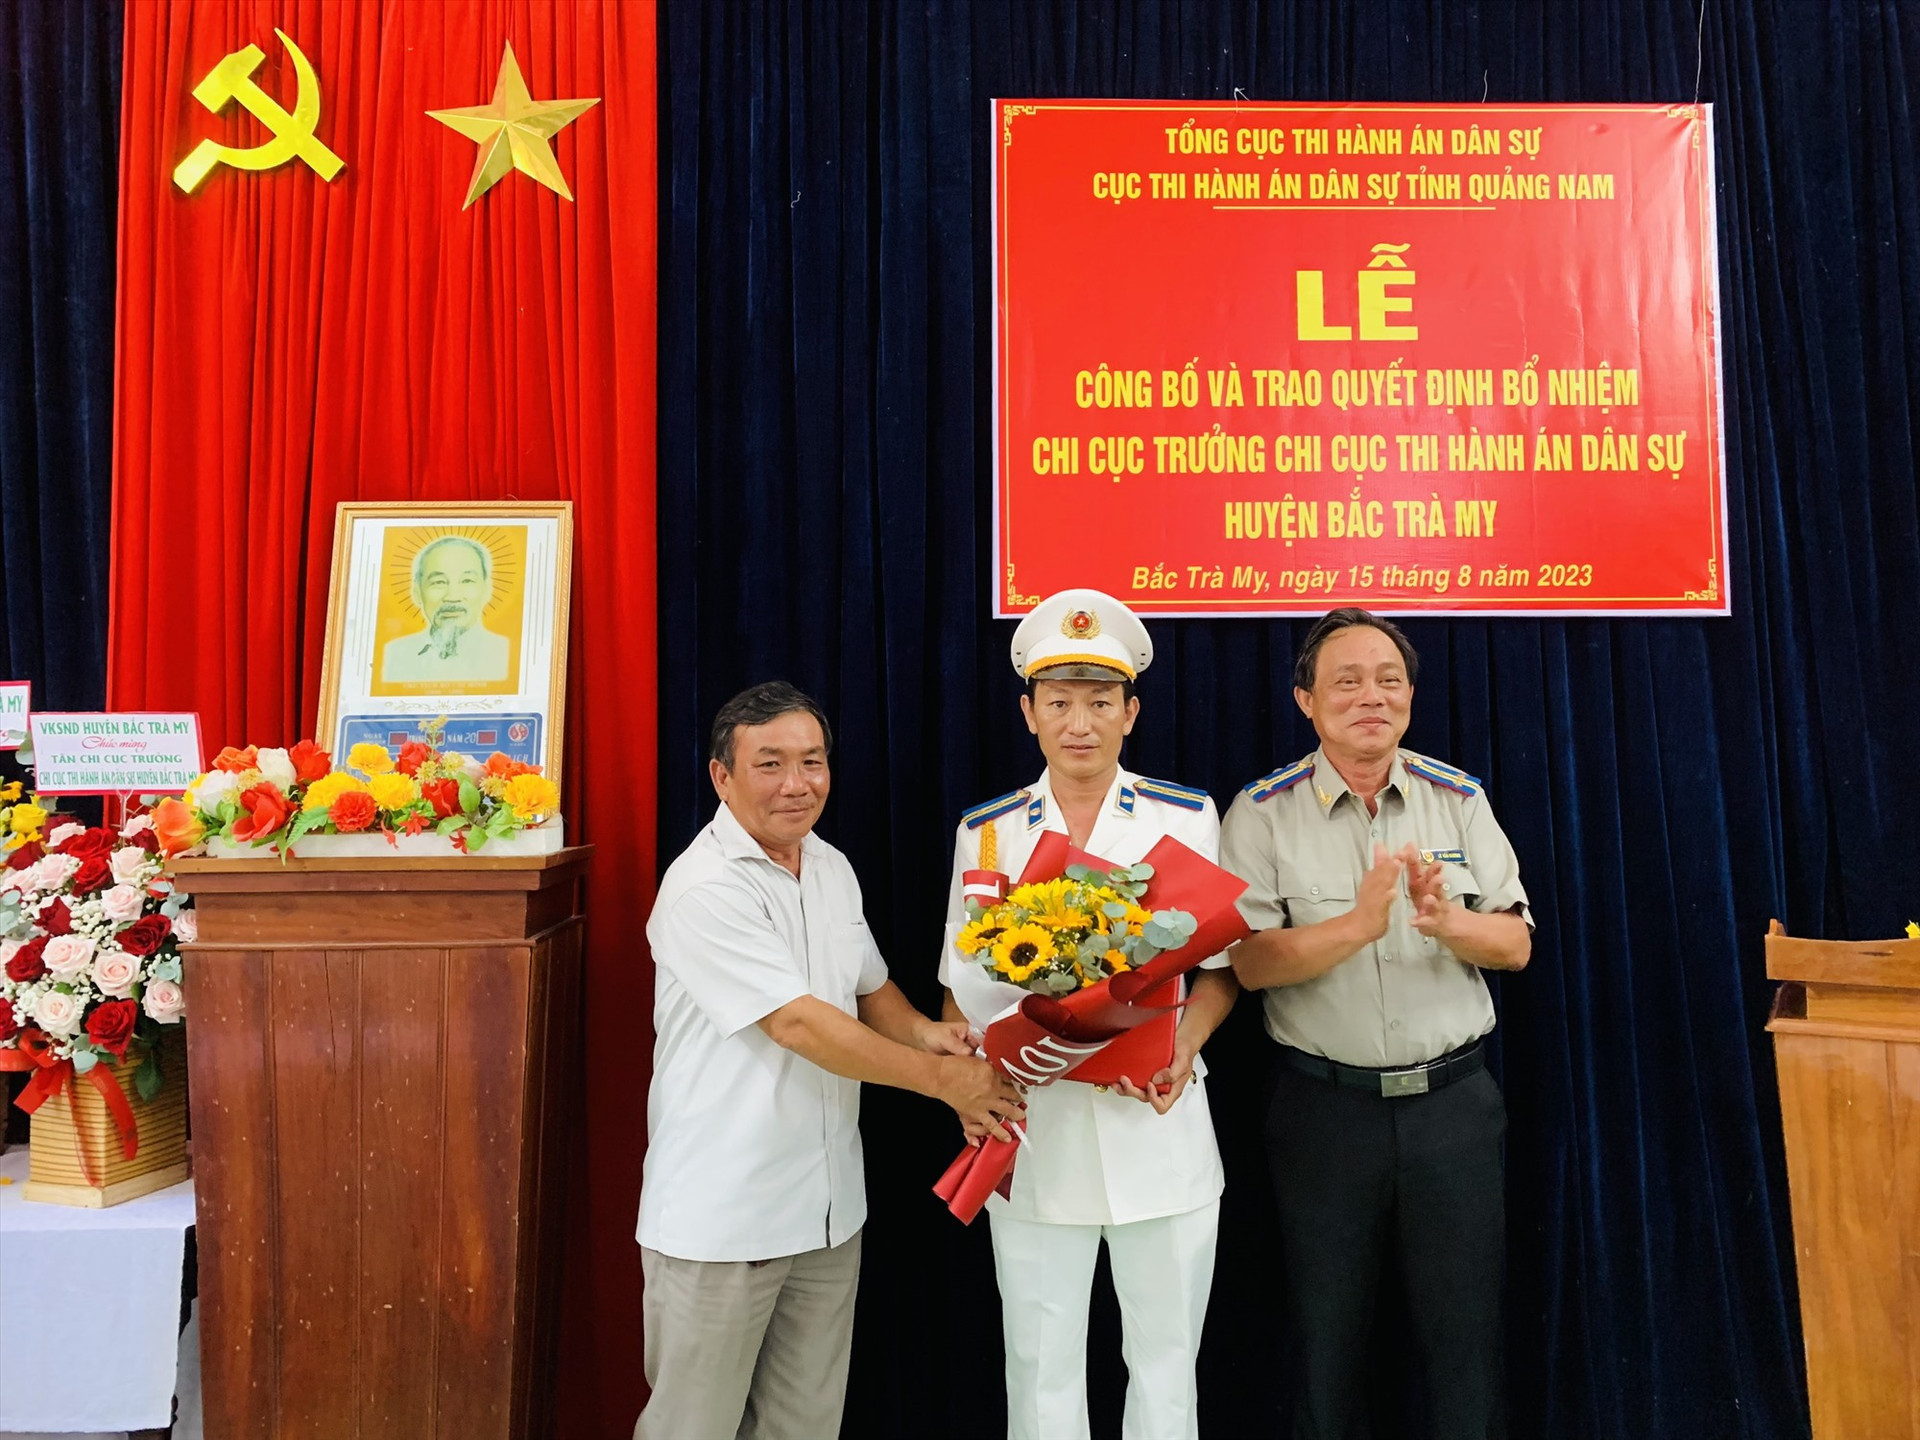 Lãnh đạo cục thi hành án dân sự tỉnh Quảng Nam và lãnh đạo huyện Bắc Trà My trao Quyết định, tặng hoa chúc mừng. ẢNH TÚ VÂN